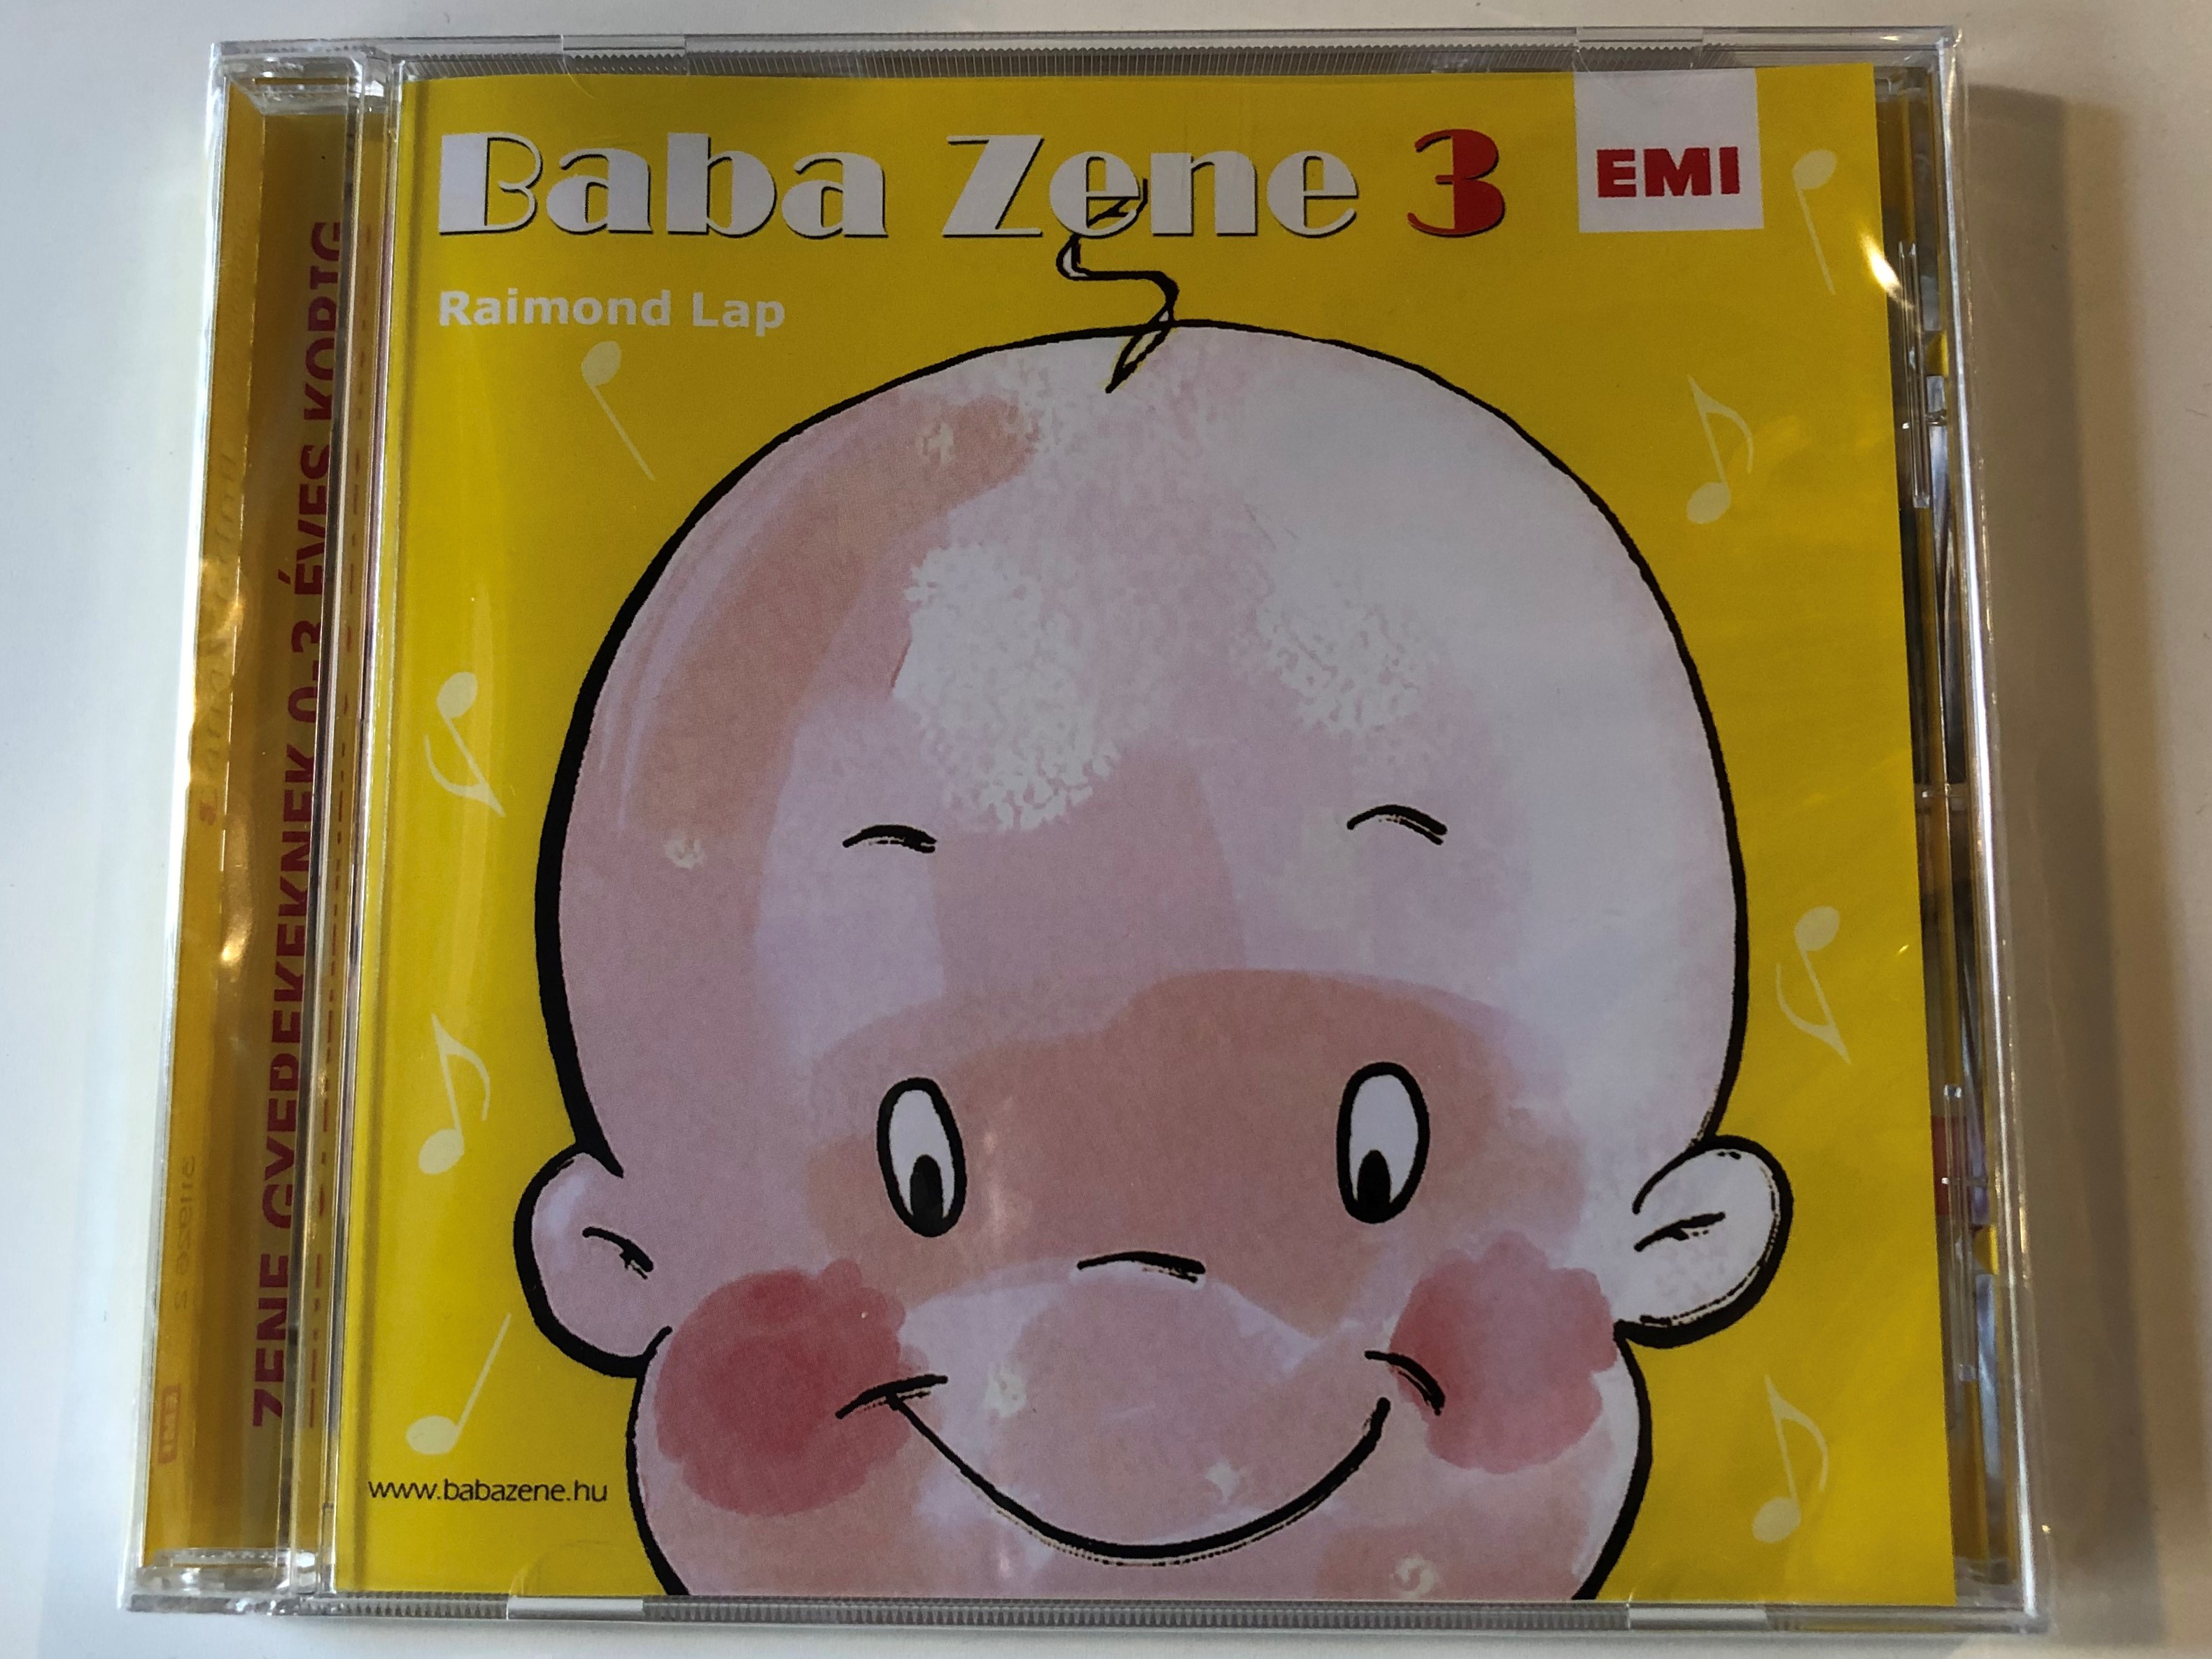 baba-zene-3.-raimond-lap-emi-audio-cd-0094631192623-1-.jpg